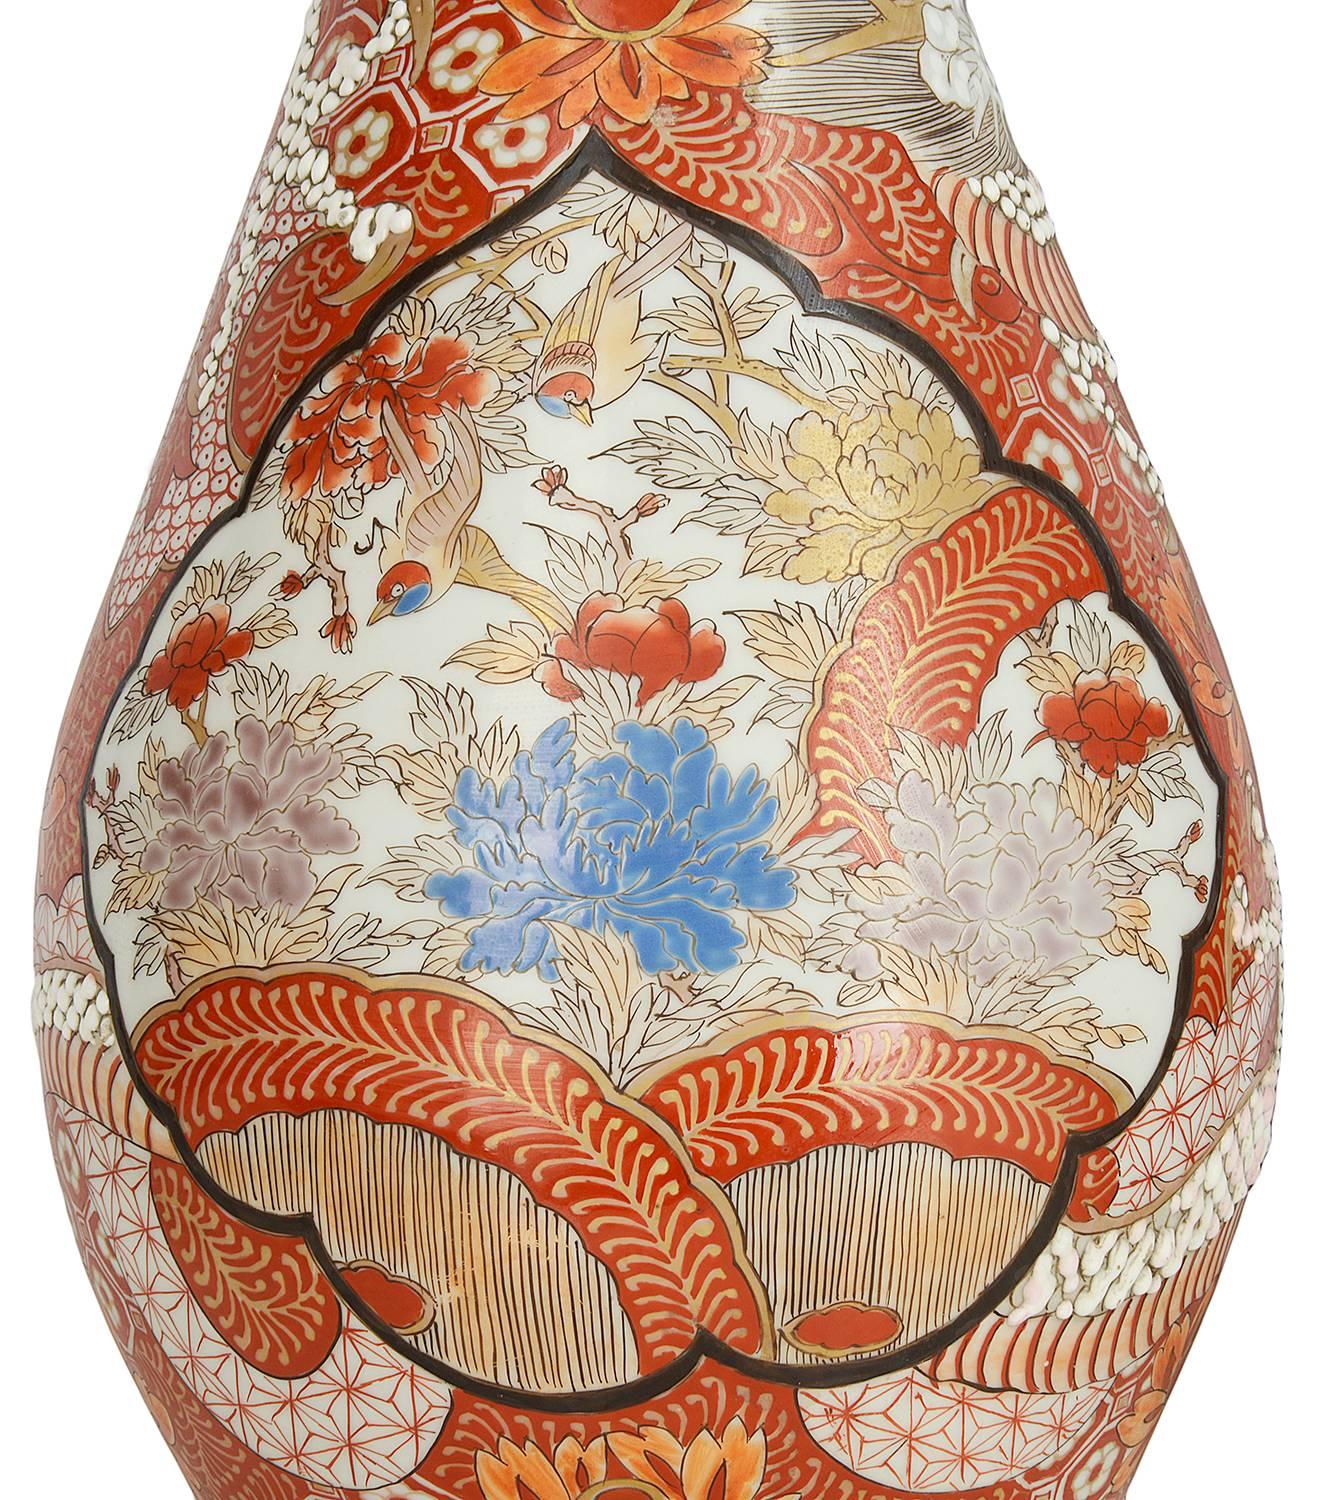 Paire de vases Kutani japonais du XIXe siècle de bonne qualité, chacun présentant des dragons mythiques enroulés autour des vases parmi des fleurs et des moitfs.